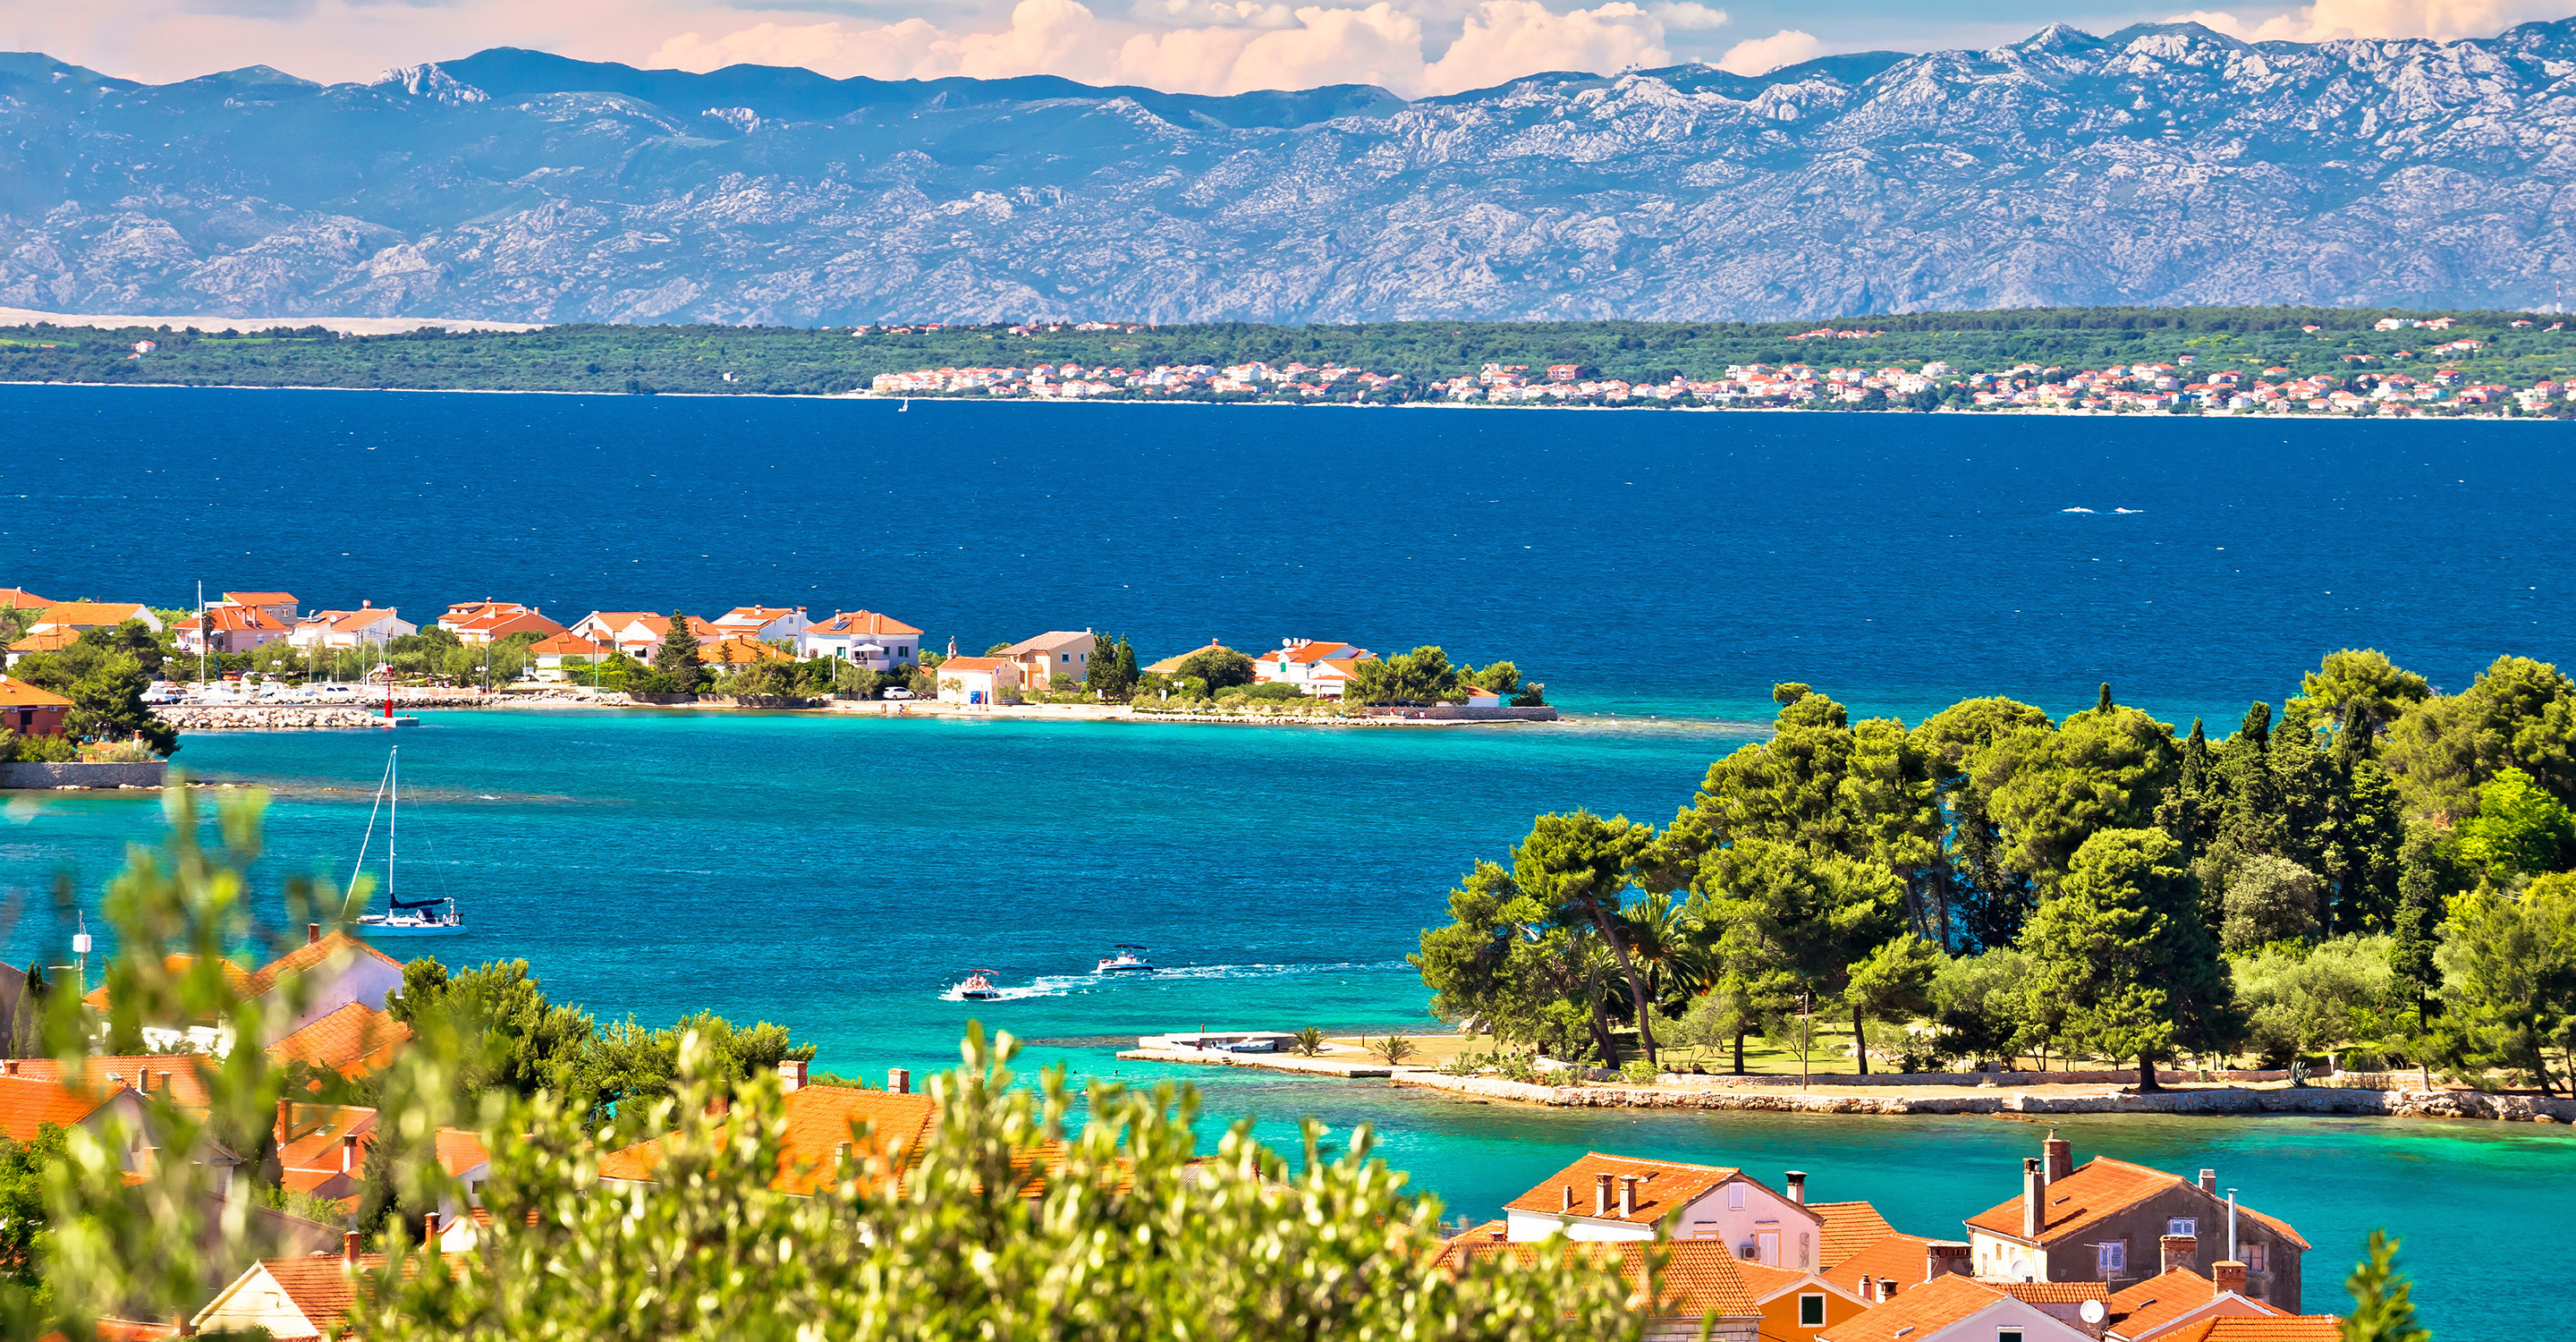 Zadar islands in front of Velebit mountains, Preko, Dalmatia, Croatia